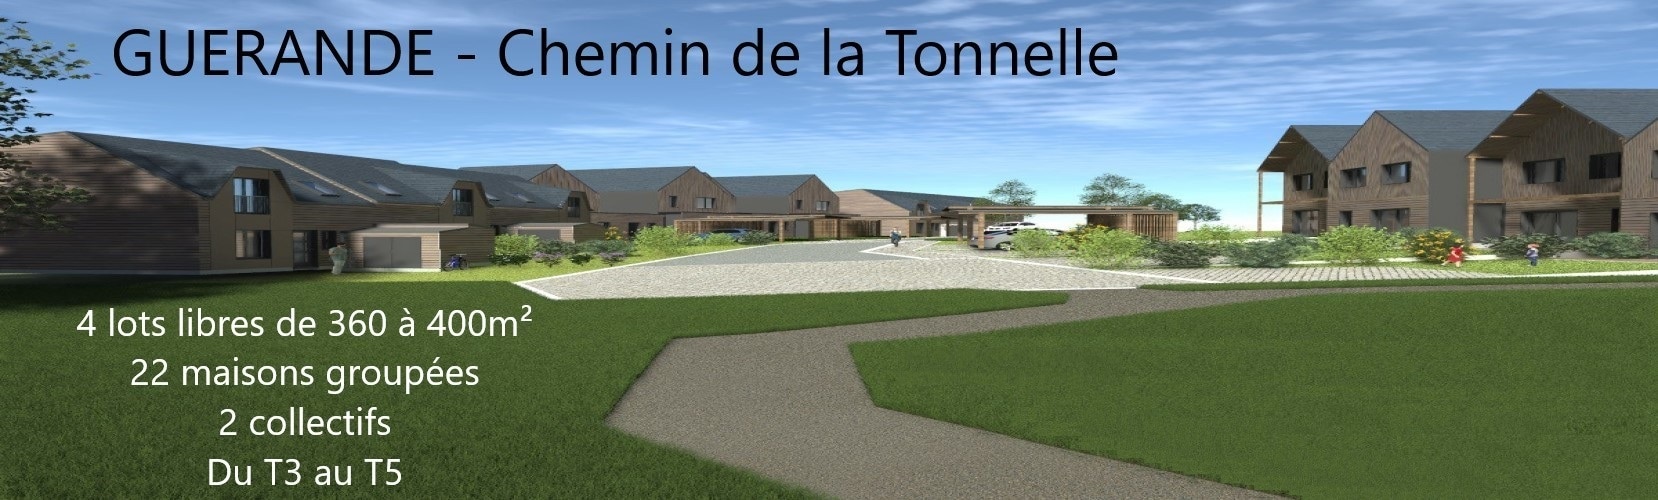 Guérande- Chemin de la Tonnelle